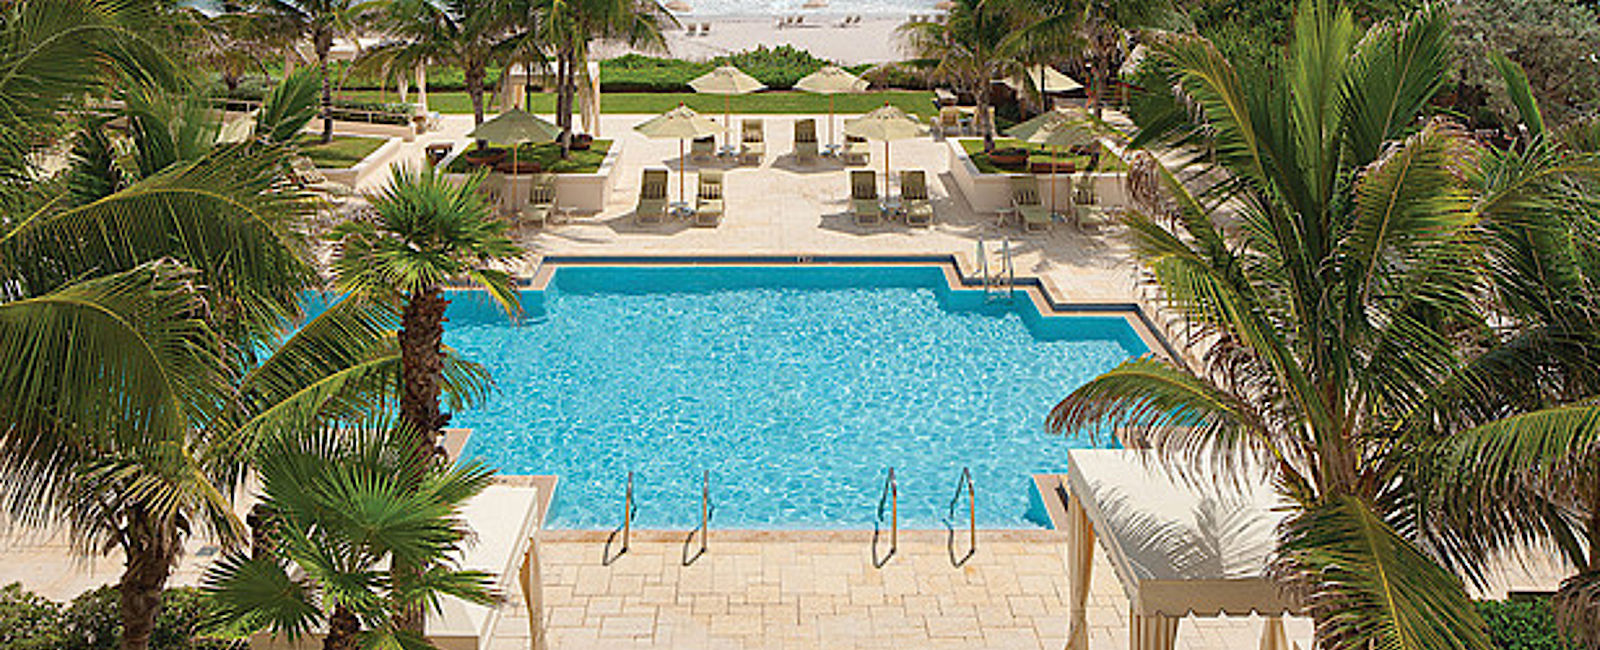 HOTEL TIPPS
 Four Seasons Resort Palm Beach 
 Kulinarische Reise mitten am Oceanboulevard 